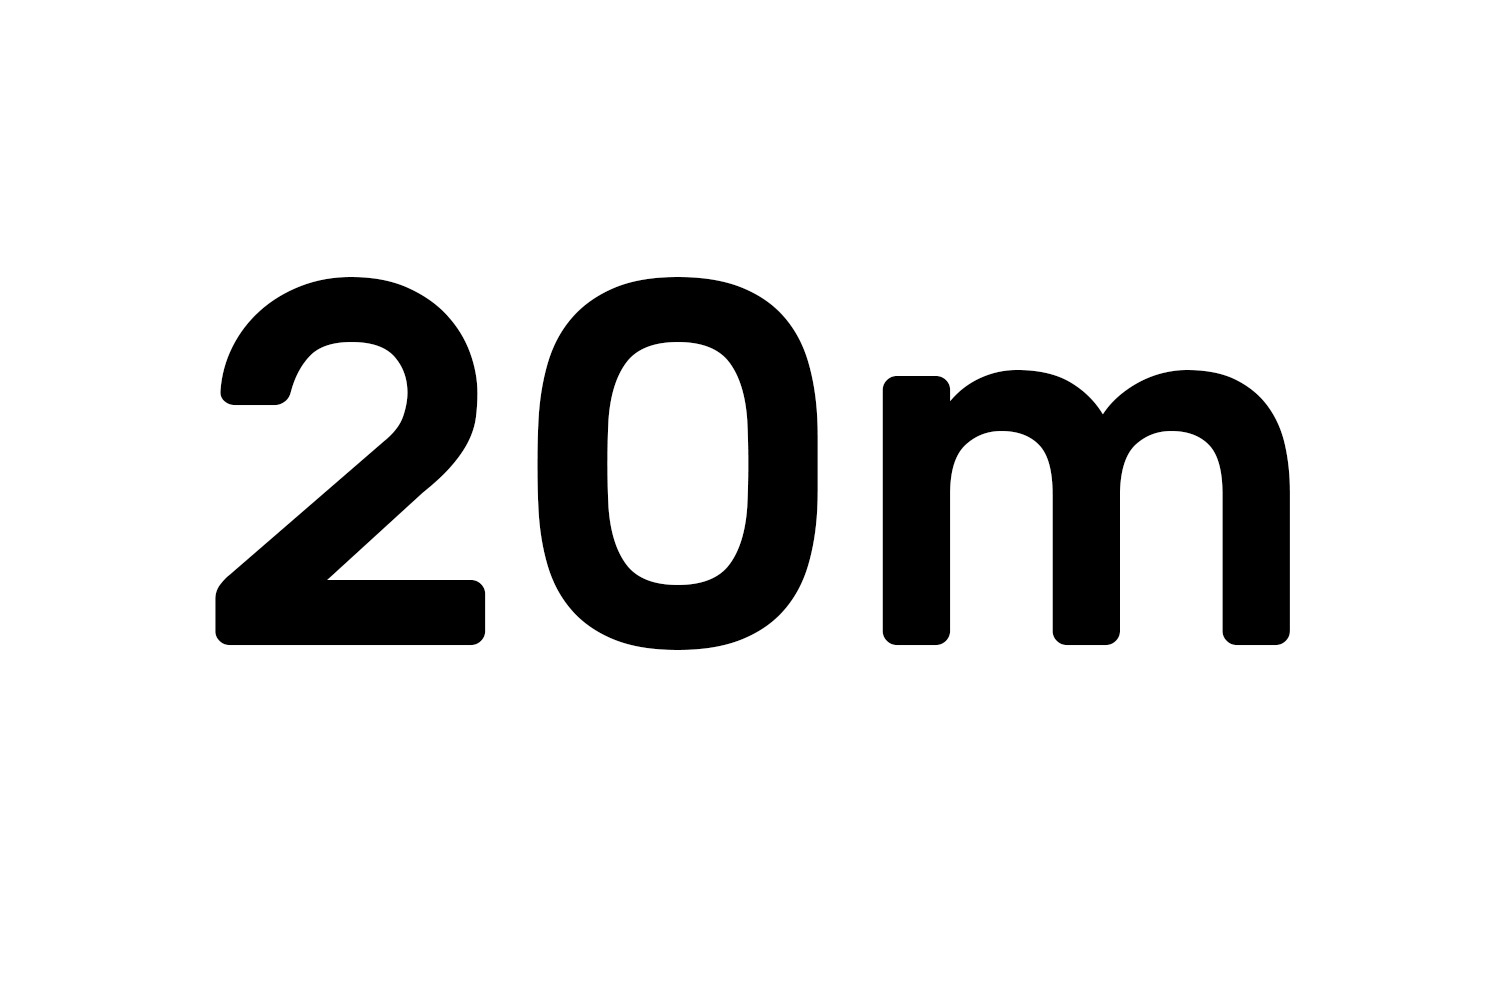 Maximum Length 20m